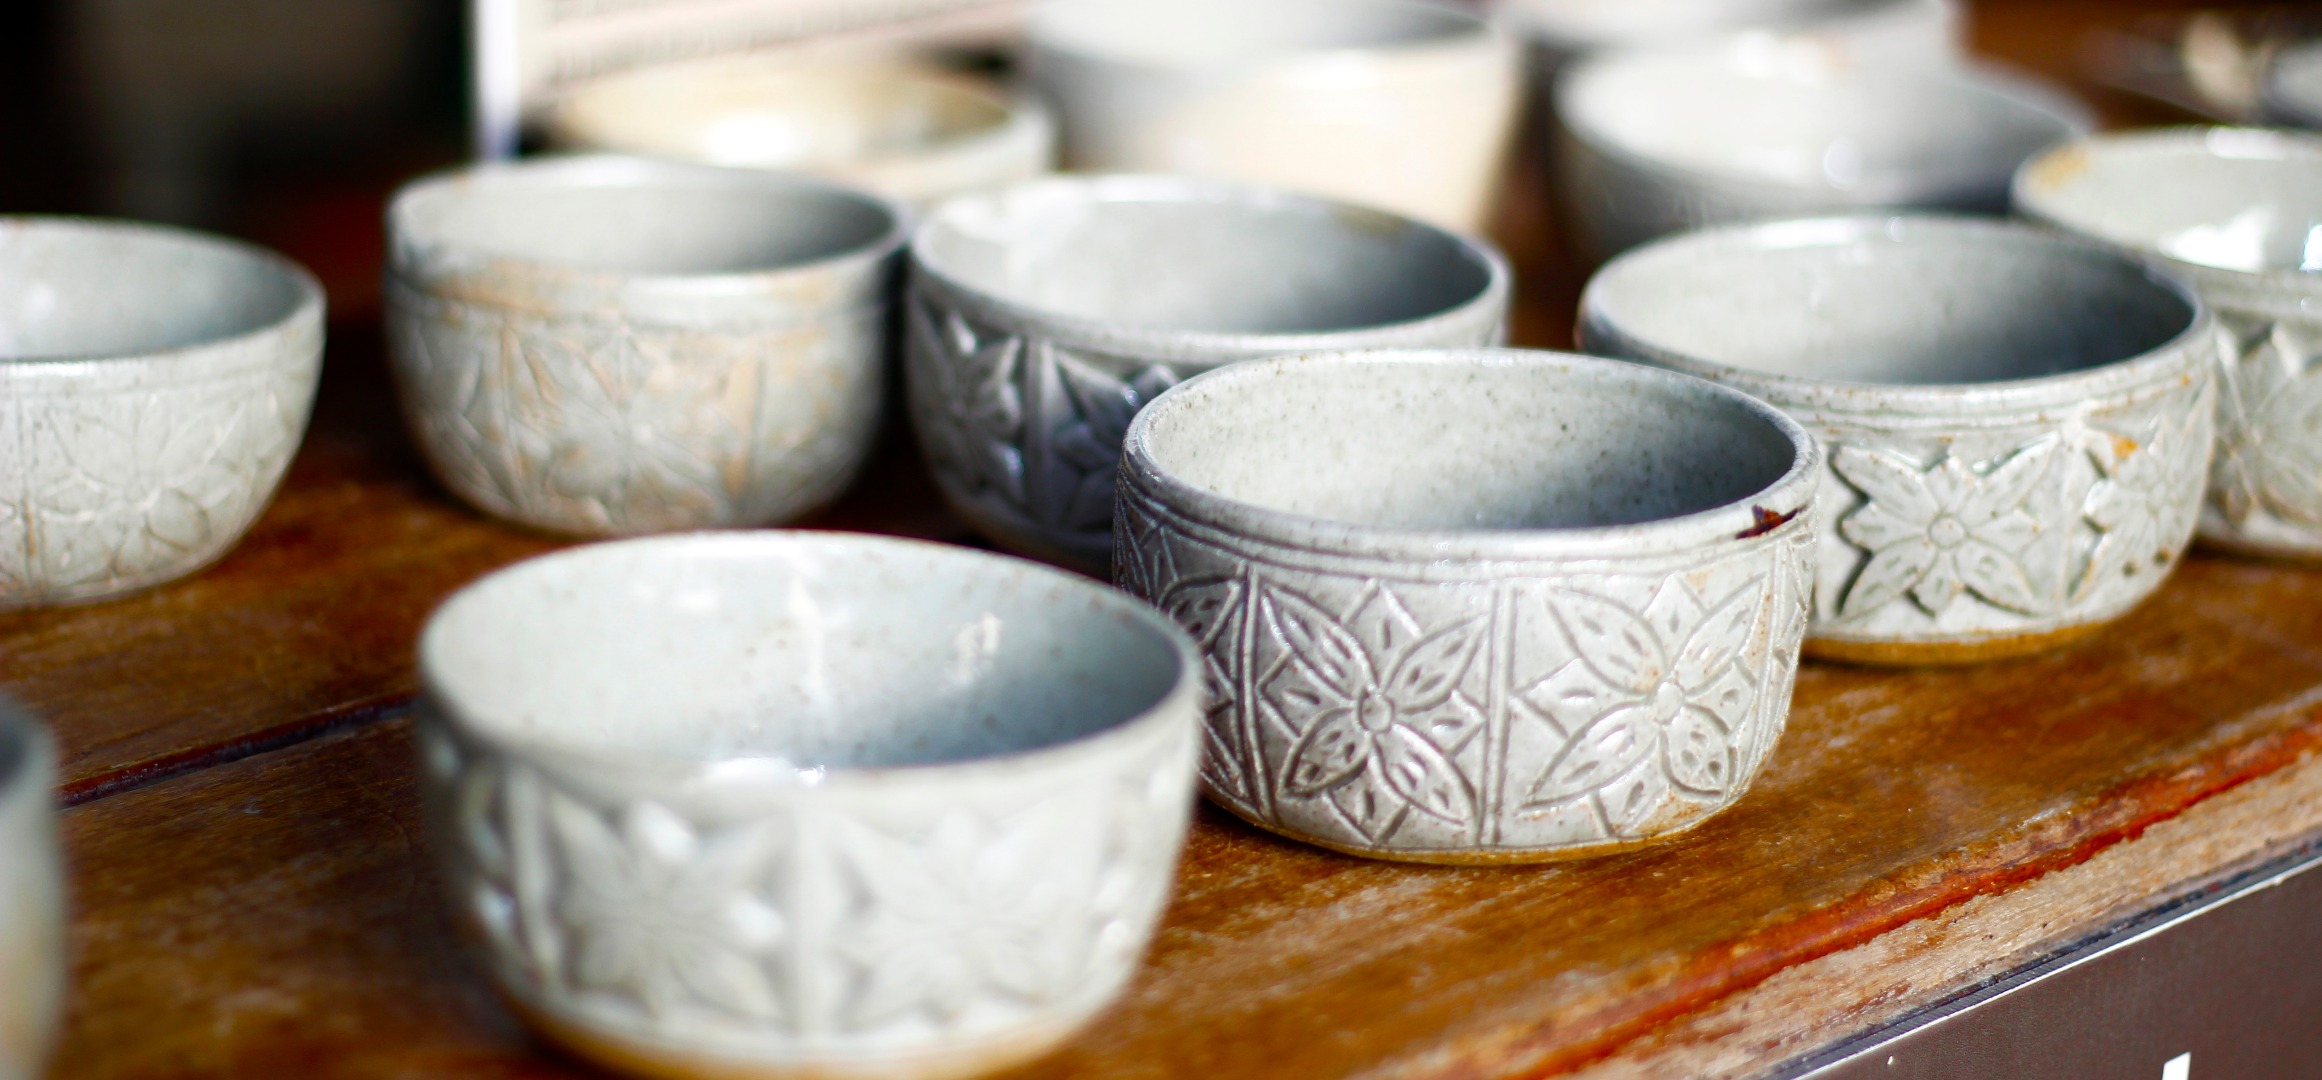 高棉陶瓷藝術製作體驗課程